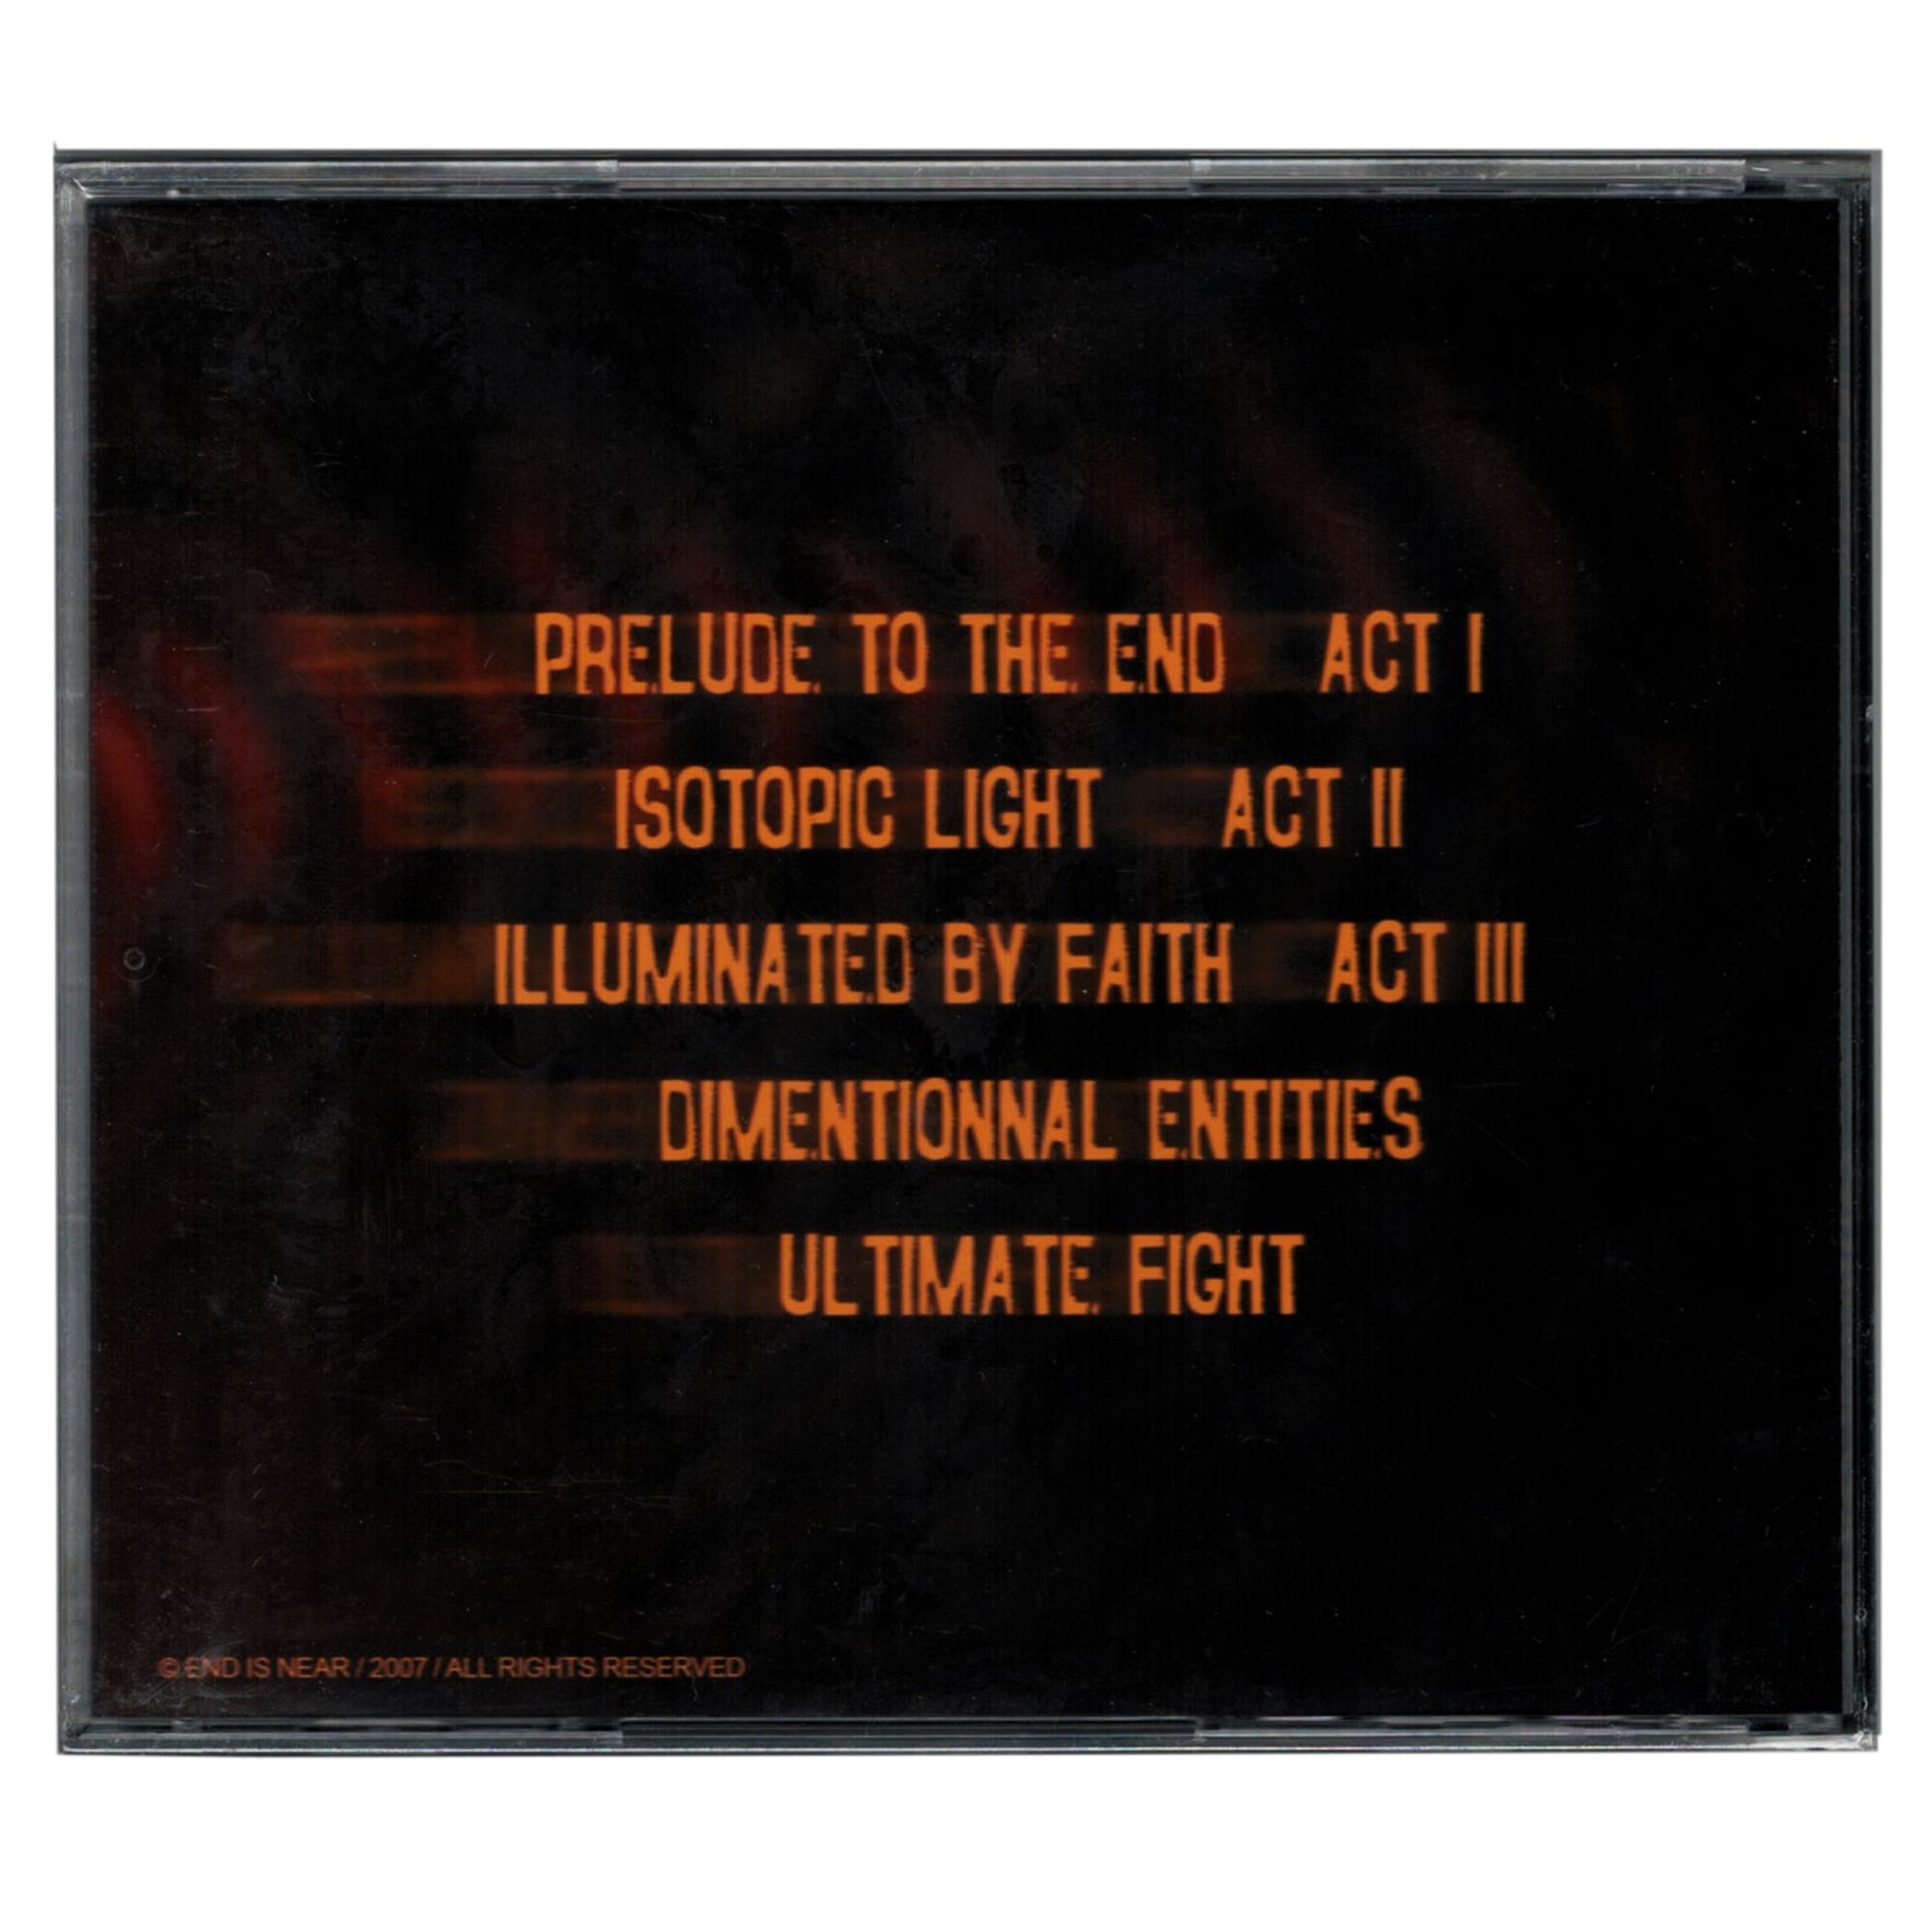 Faithless Failure CD